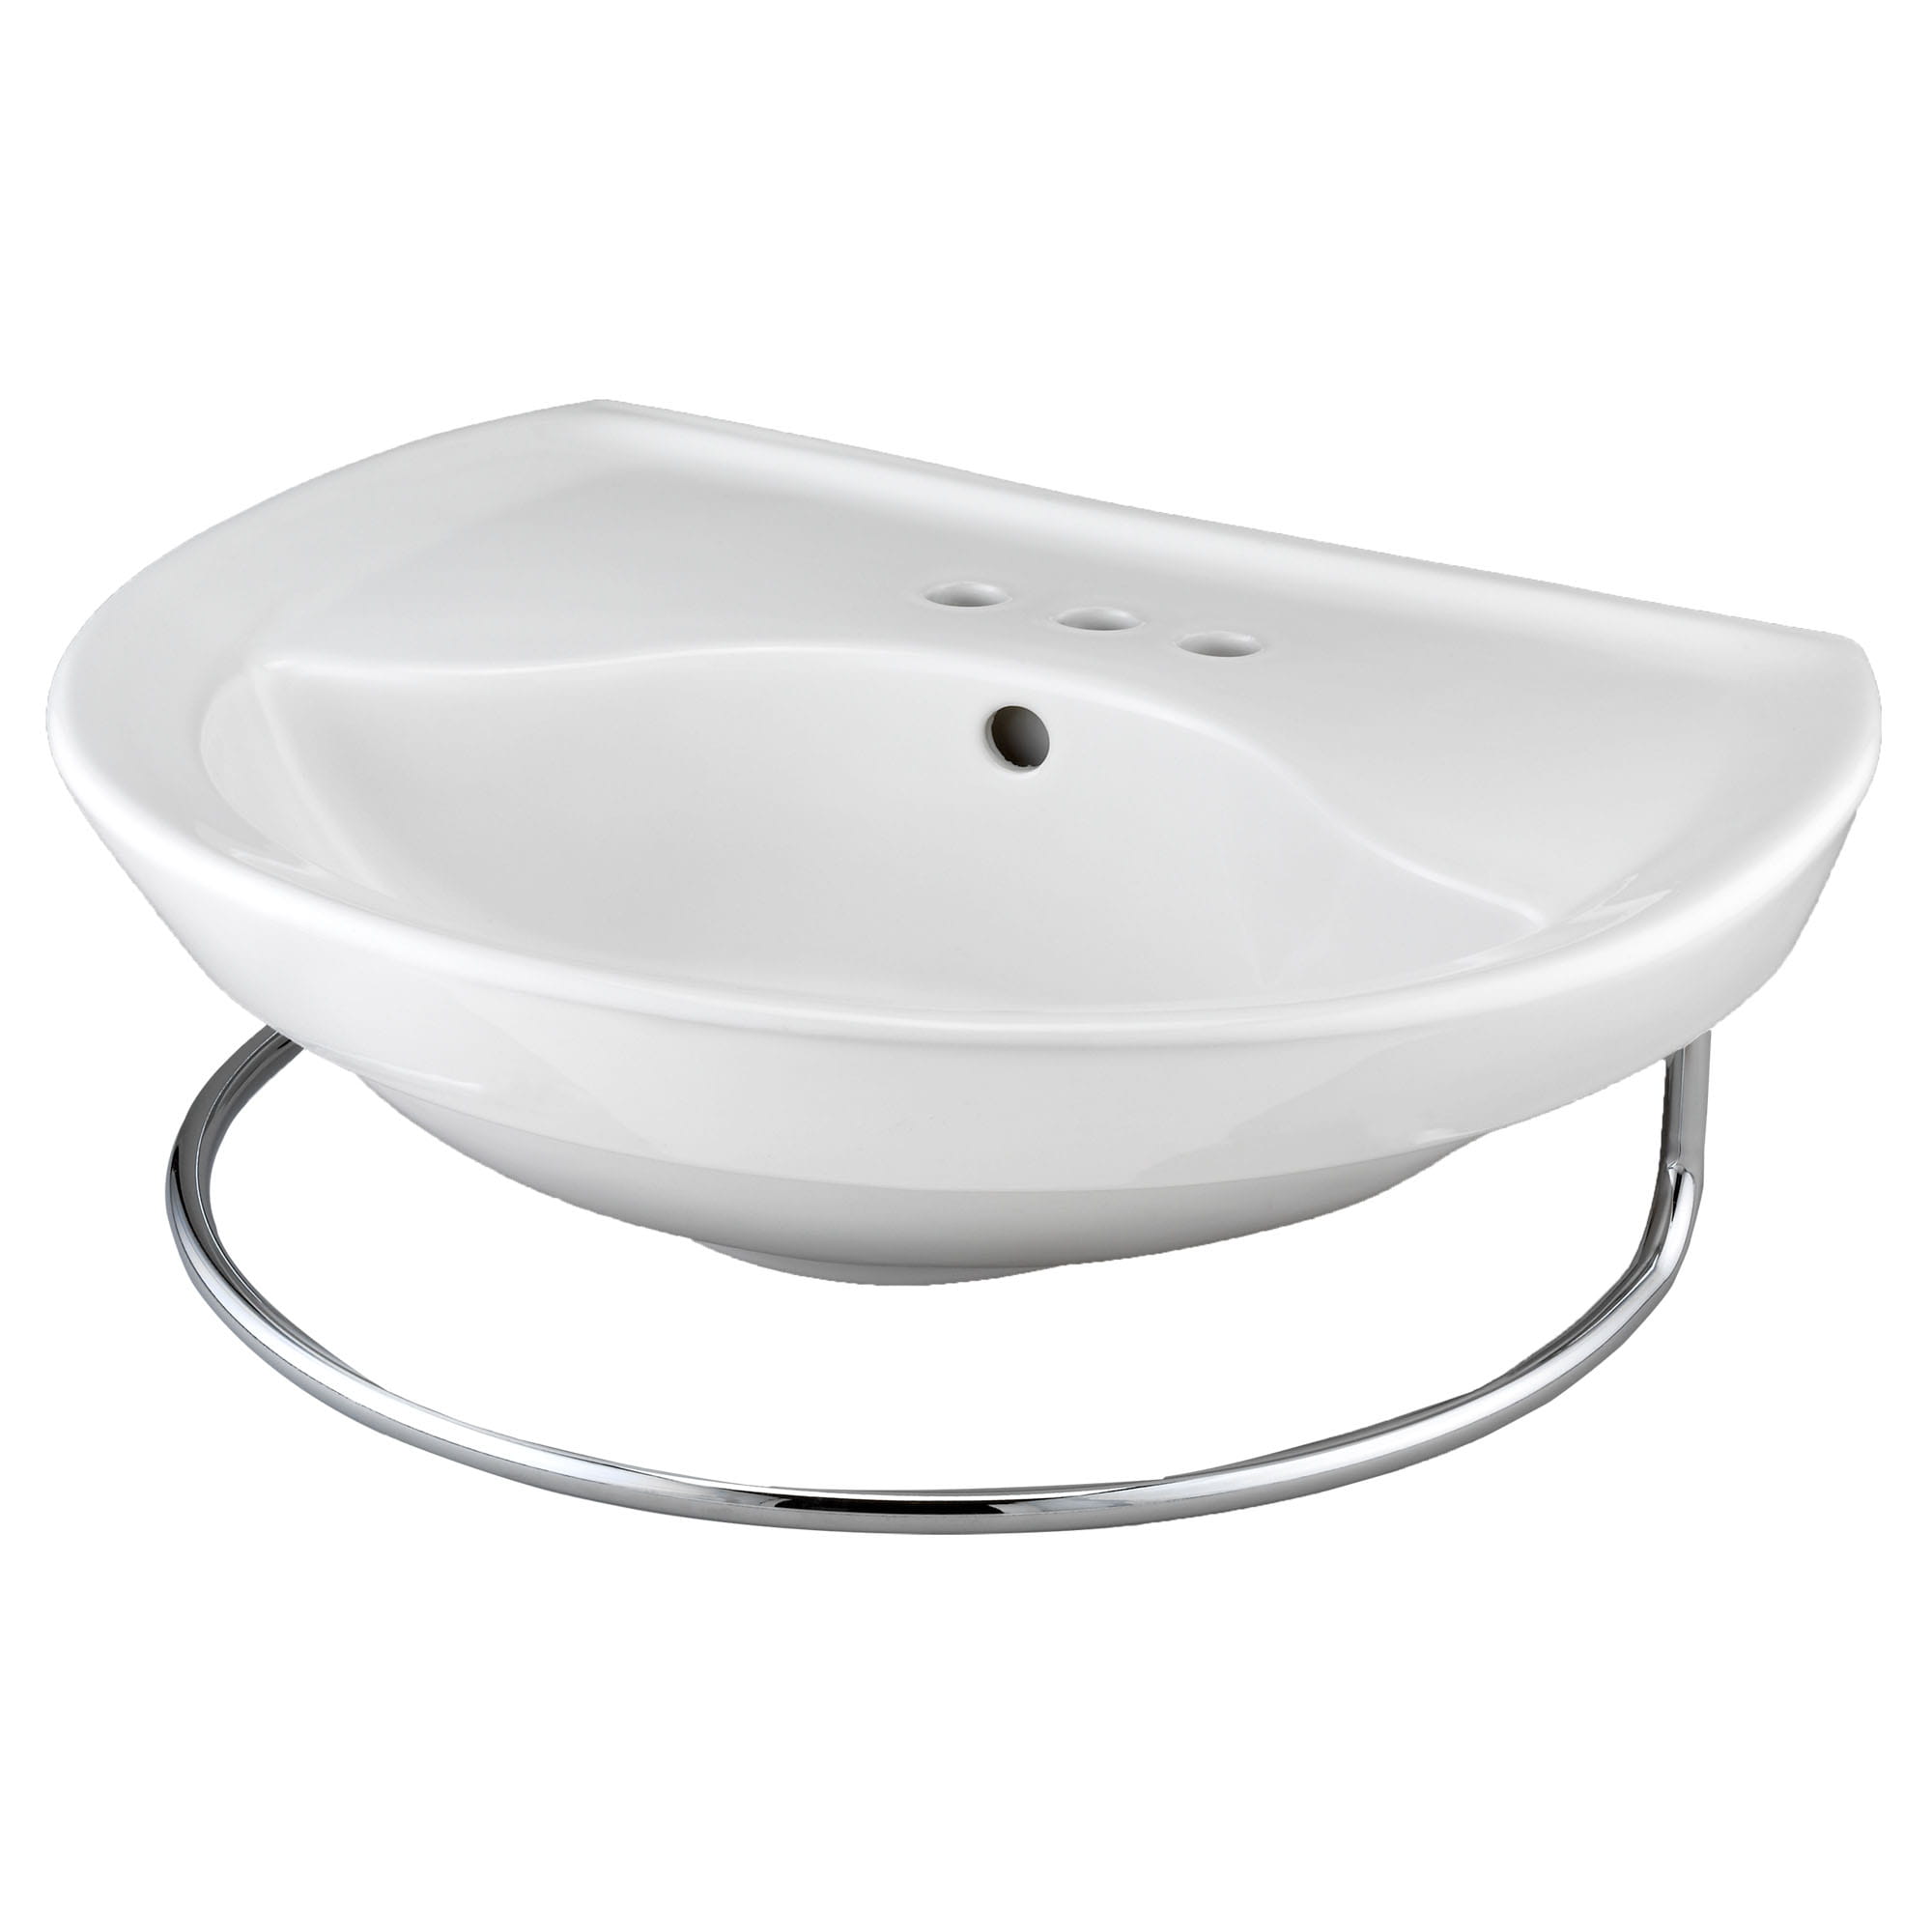 Ravenna® 4-Inch Centerset Pedestal Sink Top